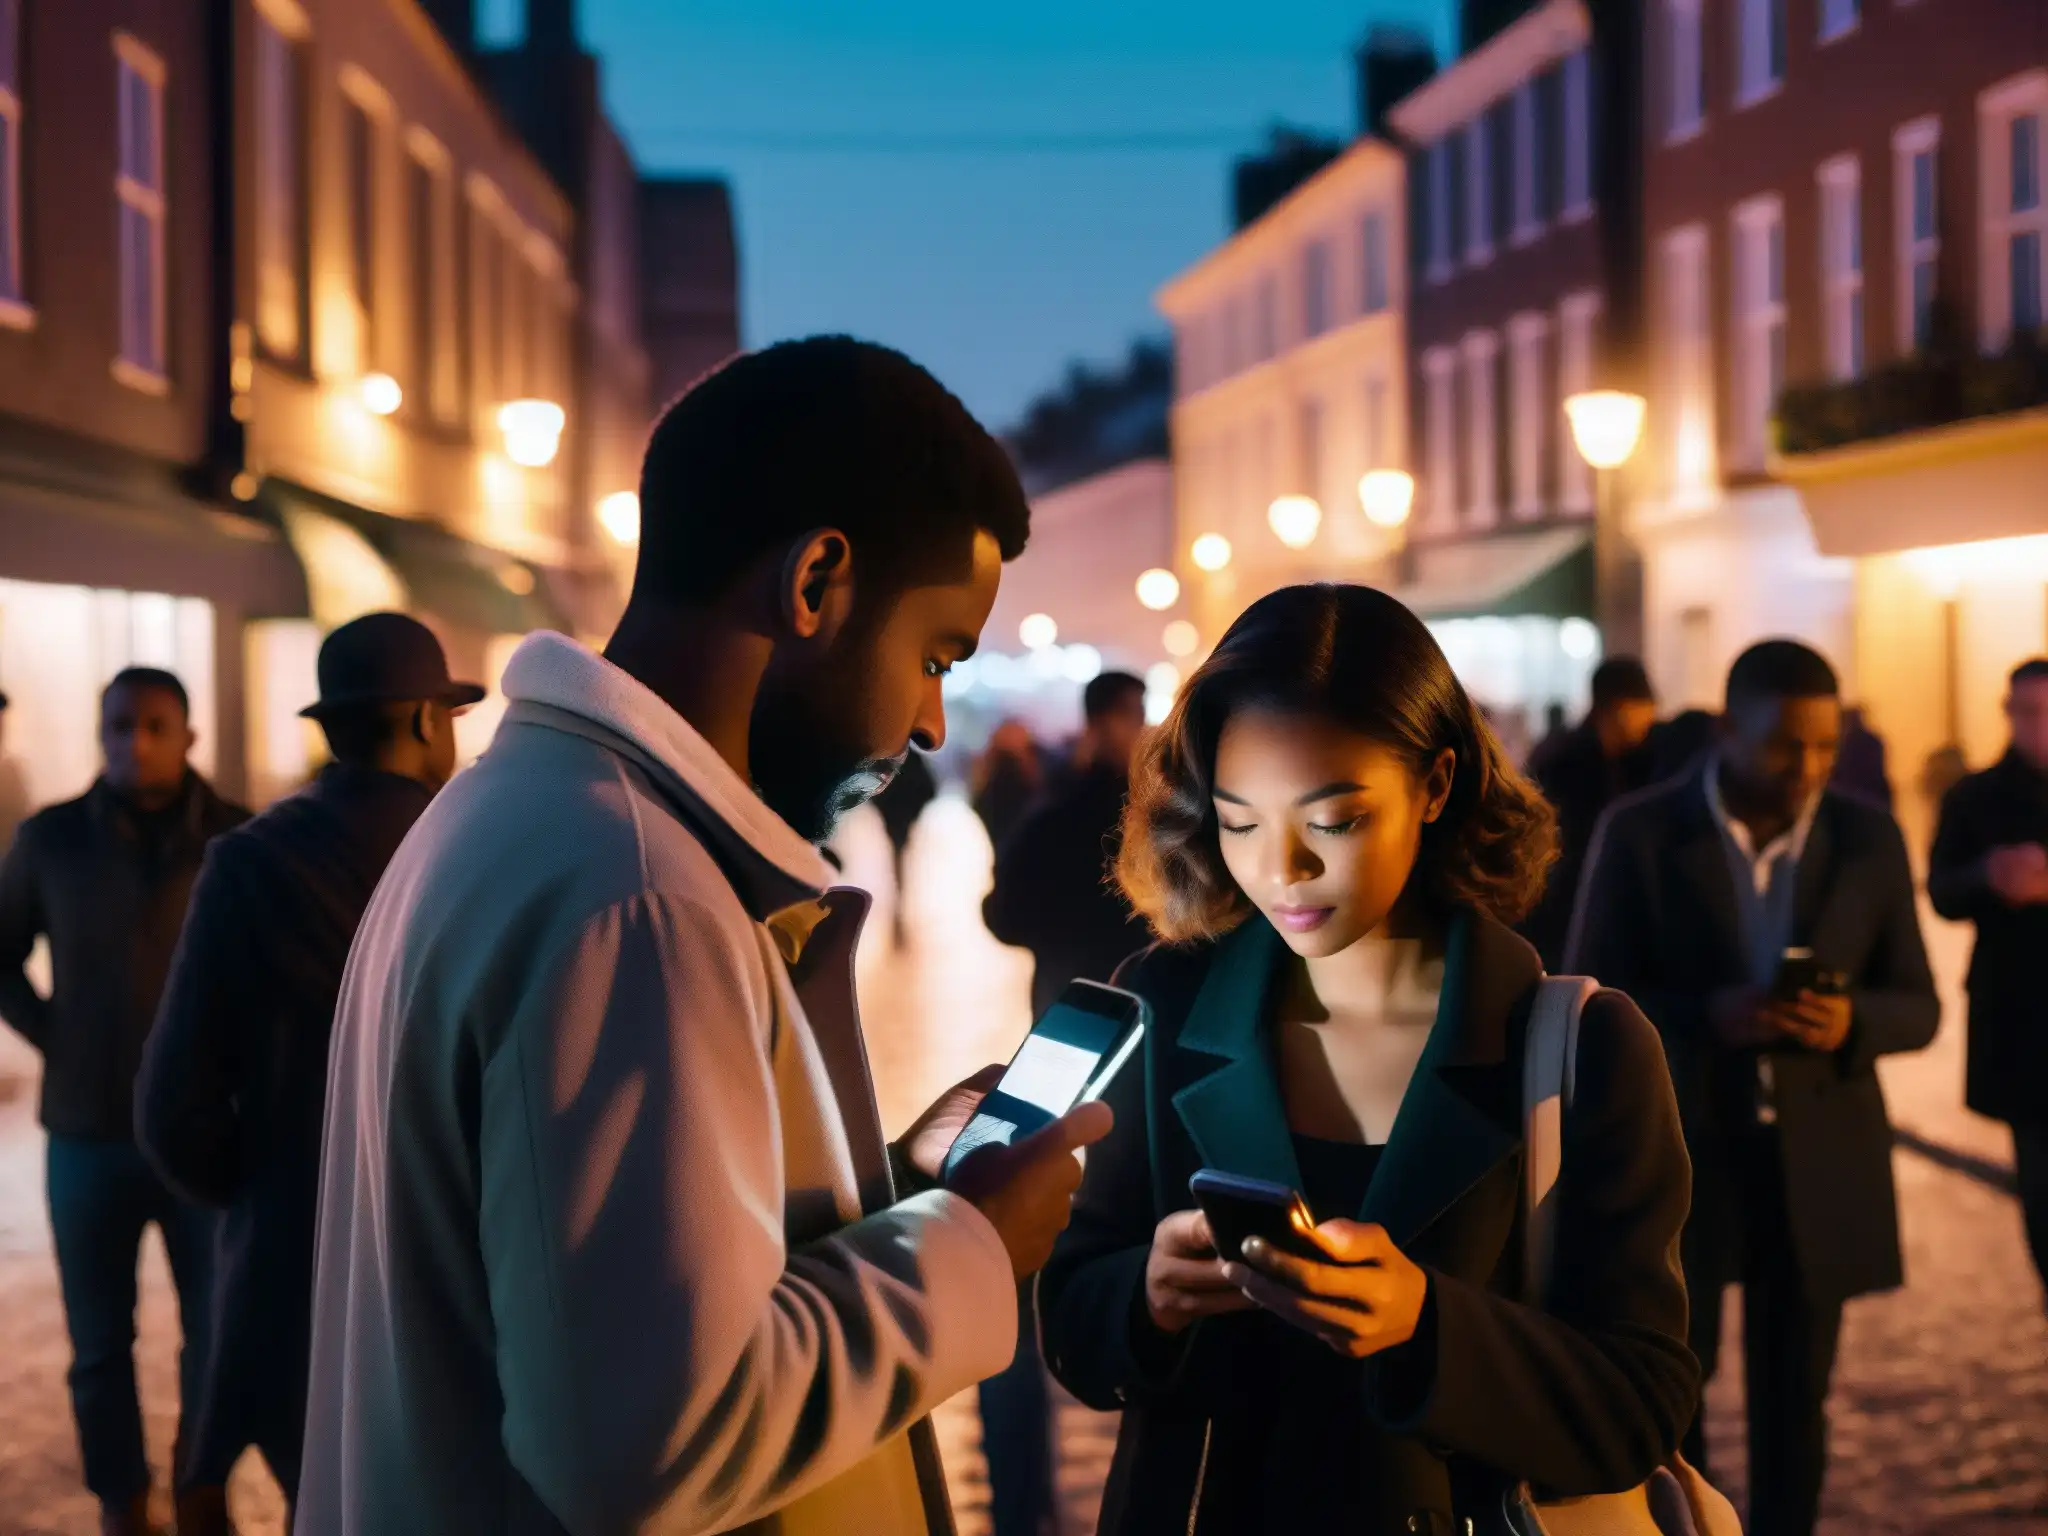 Un grupo de personas en una calle oscura comparten leyendas urbanas en un móvil, creando cohesión social en la comunidad urbana